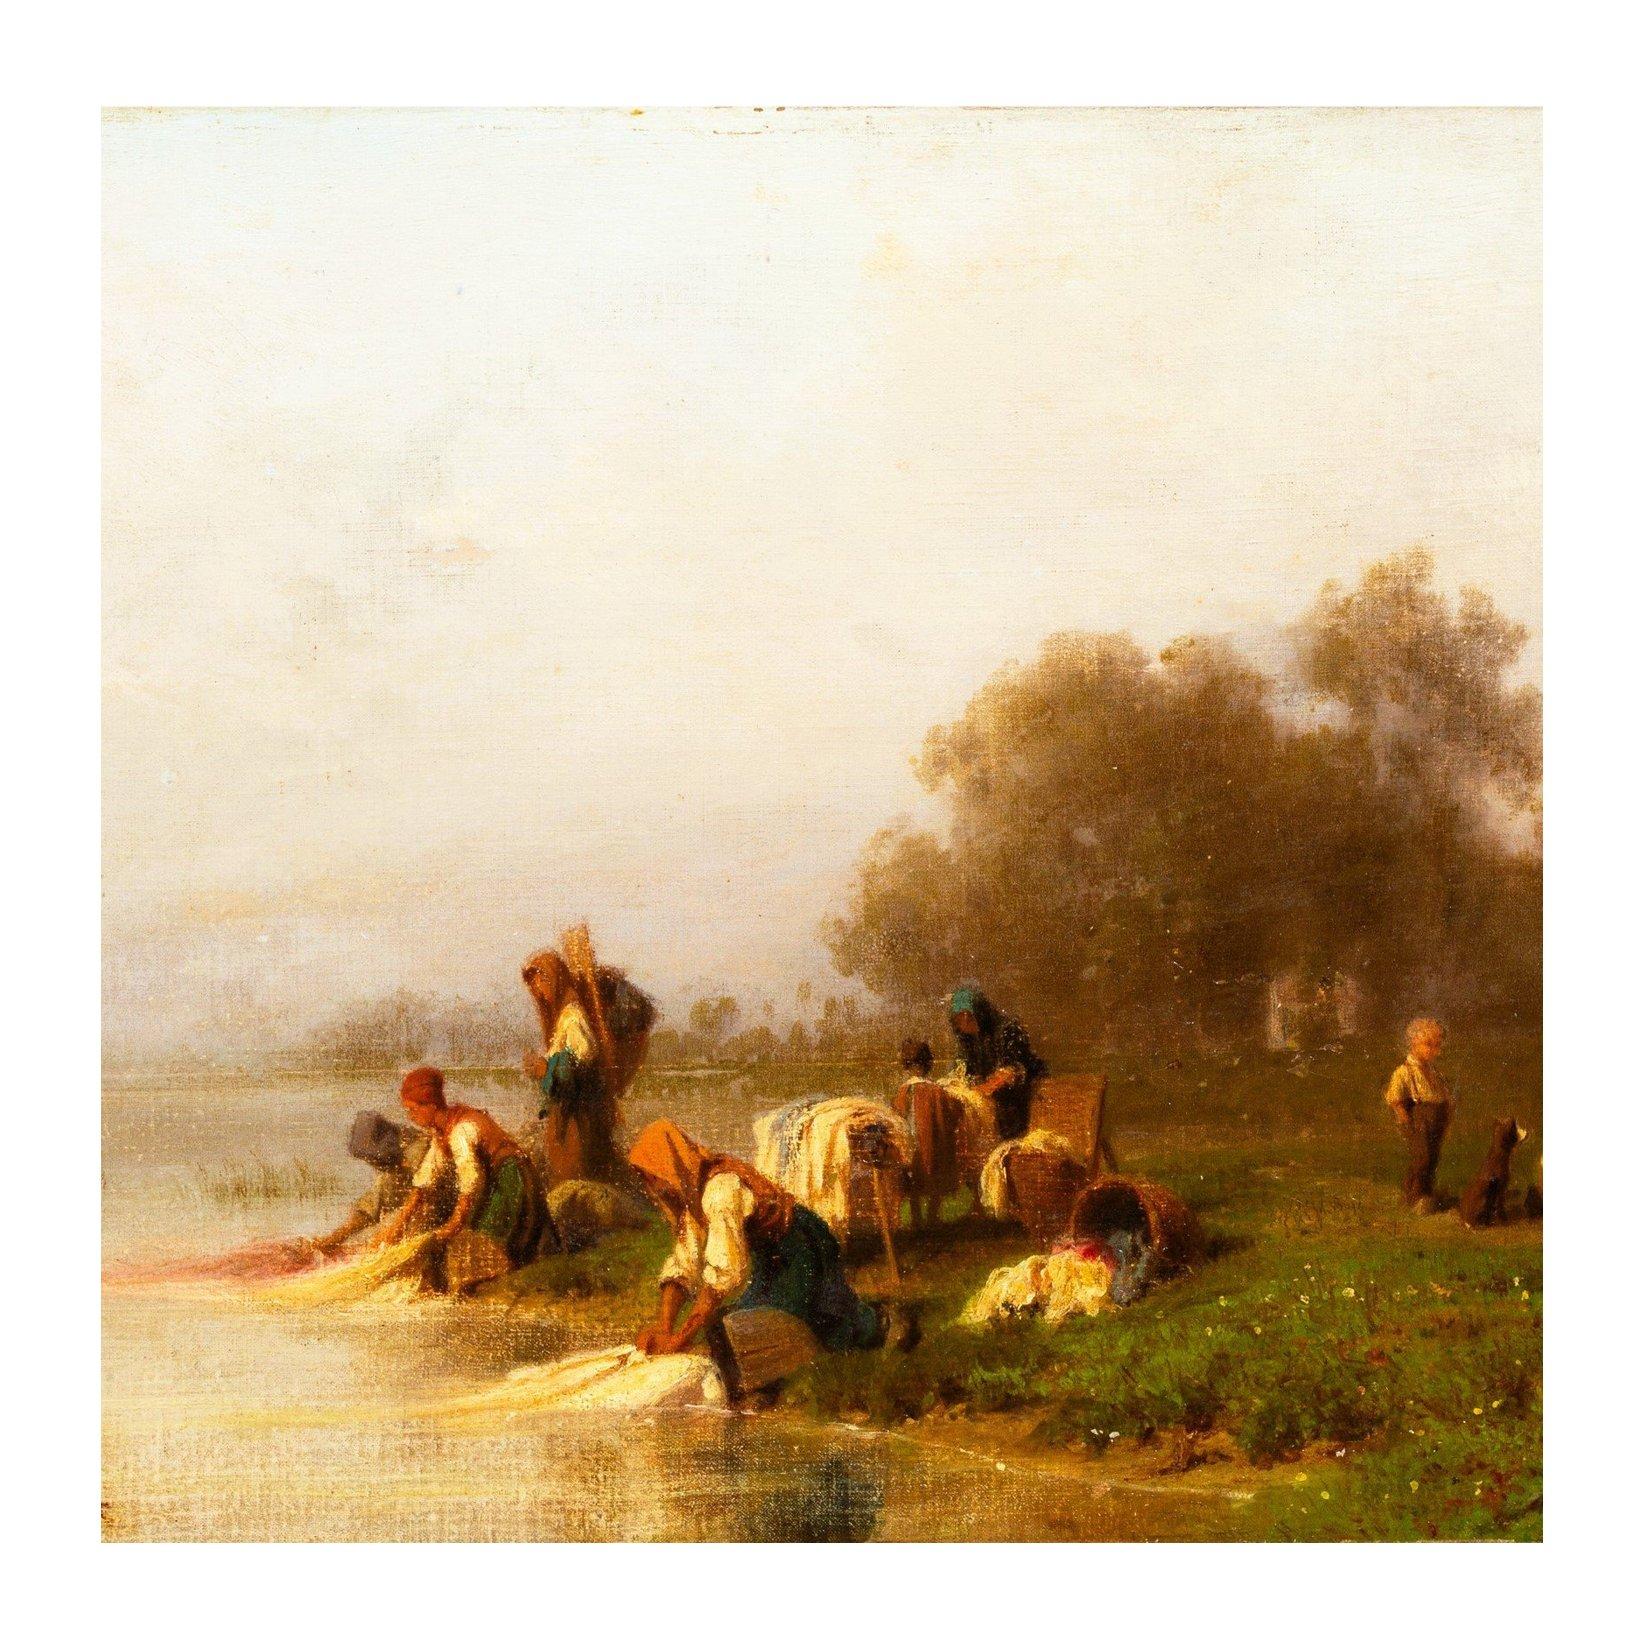 Dieses Gemälde gehört zu einer Serie von Bildern, die Girardet von Wäscherinnen am Fluss gemalt hat. Bei ihrer Präsentation hatten sie einen beachtlichen Erfolg, der bis heute anhält. Im Jahr 2008 wurde ein weiteres Gemälde dieser Serie bei